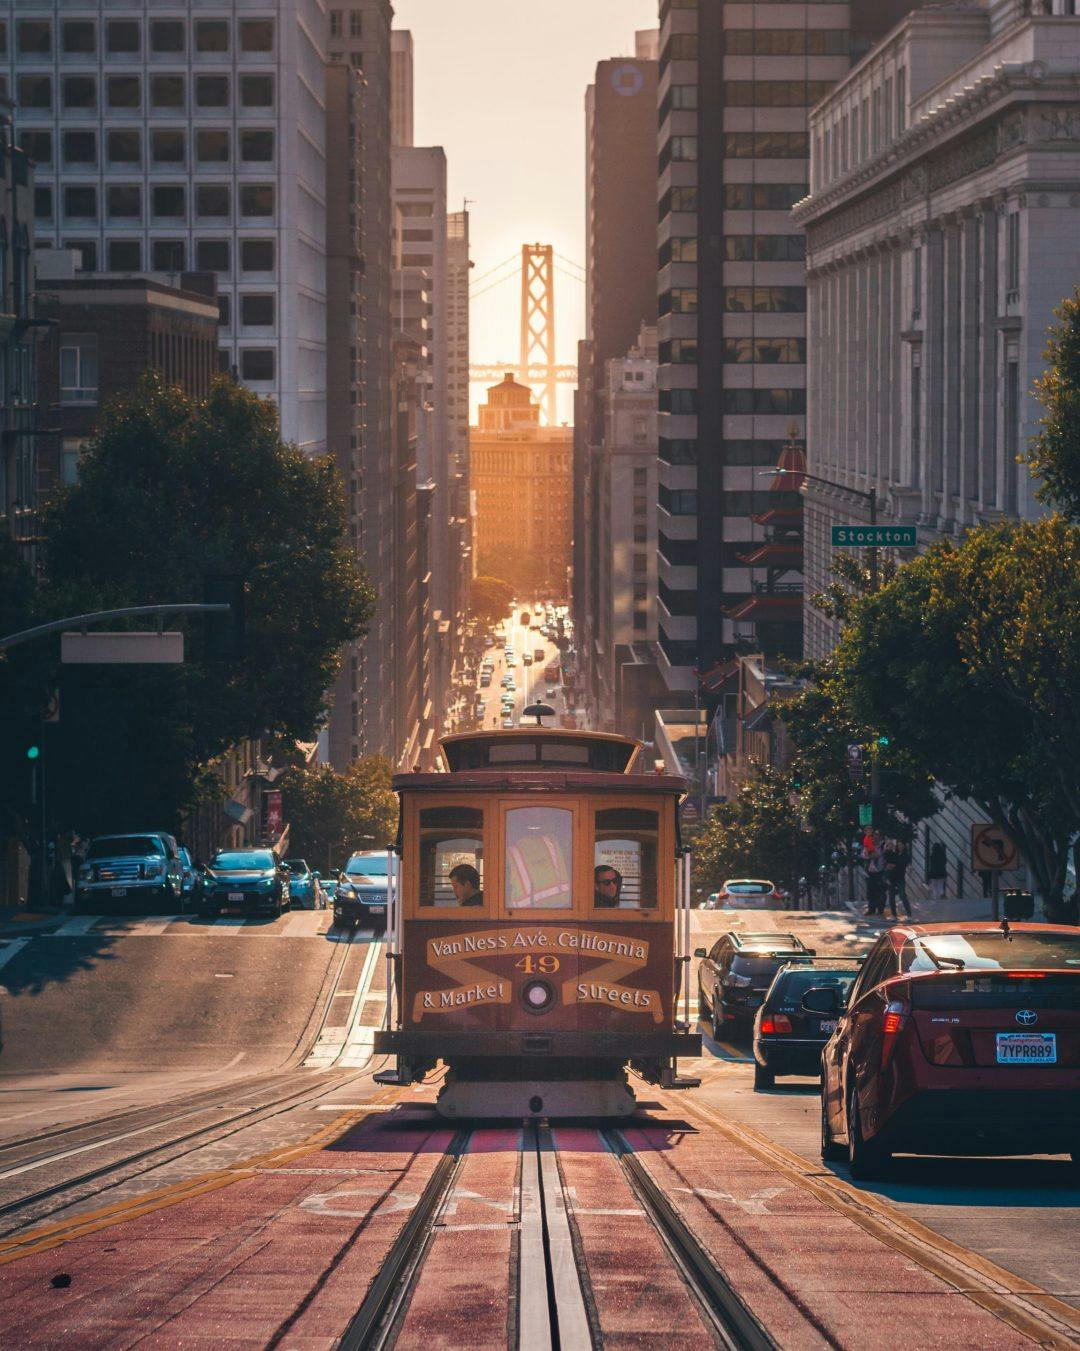 A trolley in San Francisco